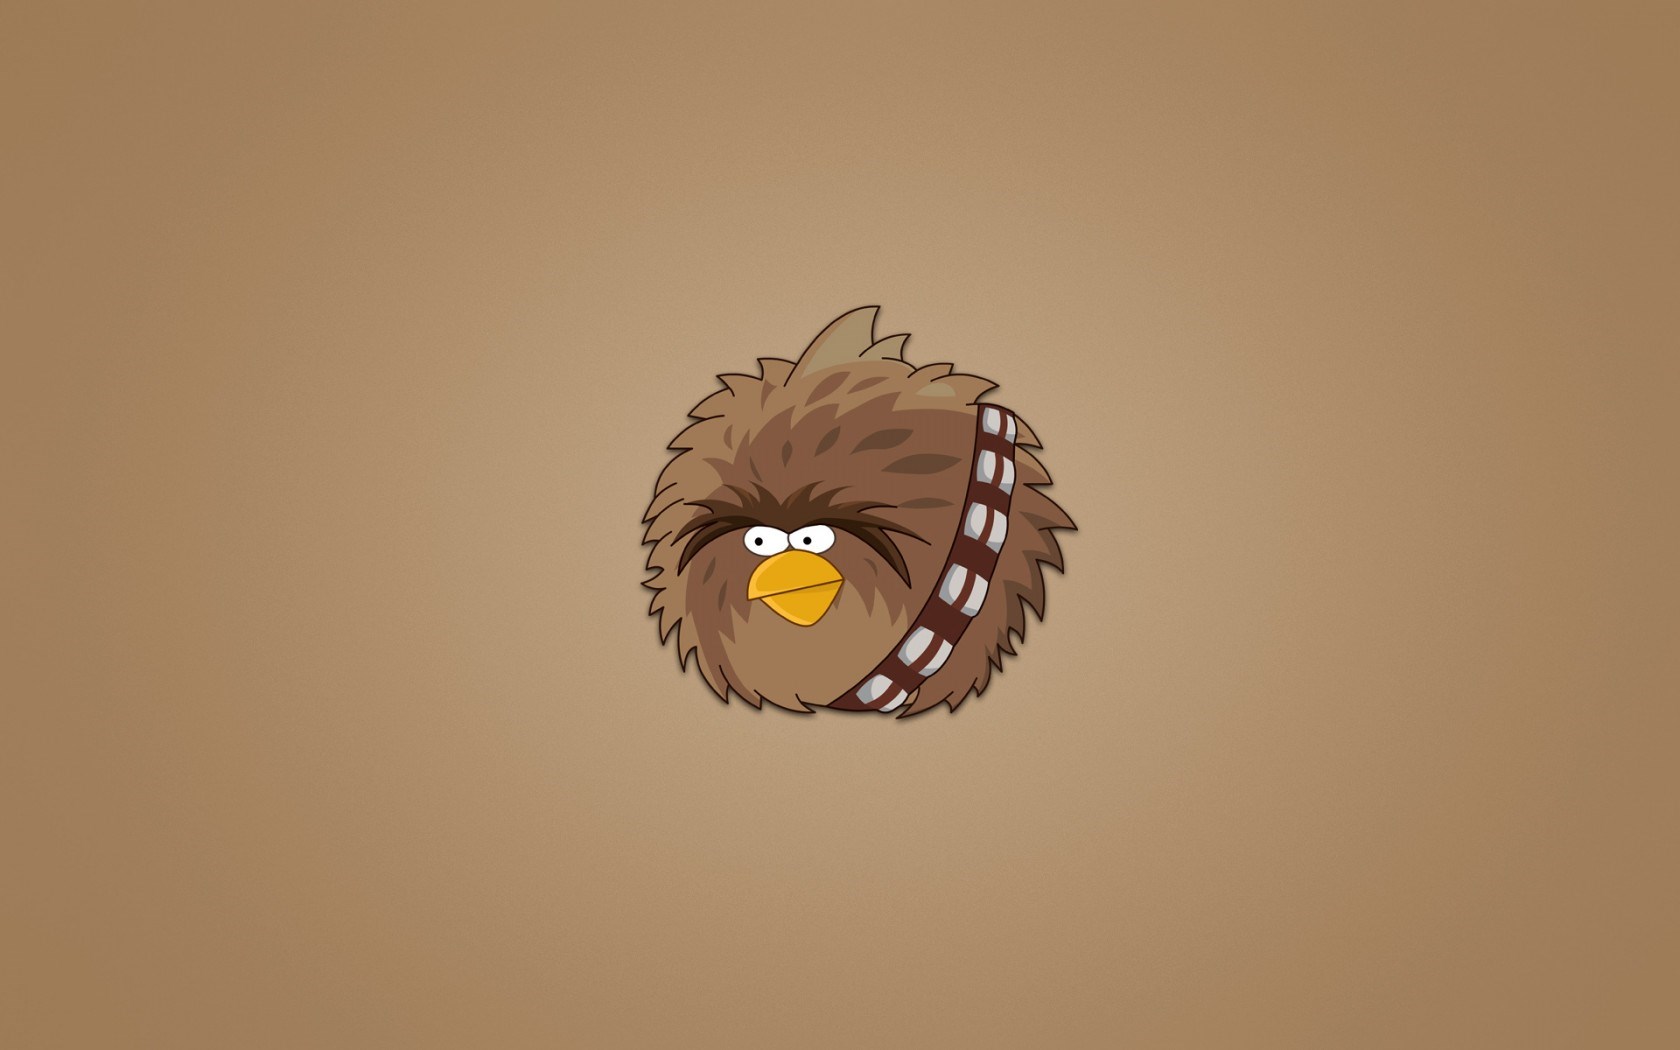 Meilleurs fonds d'écran Angry Birds Star Wars pour l'écran du téléphone